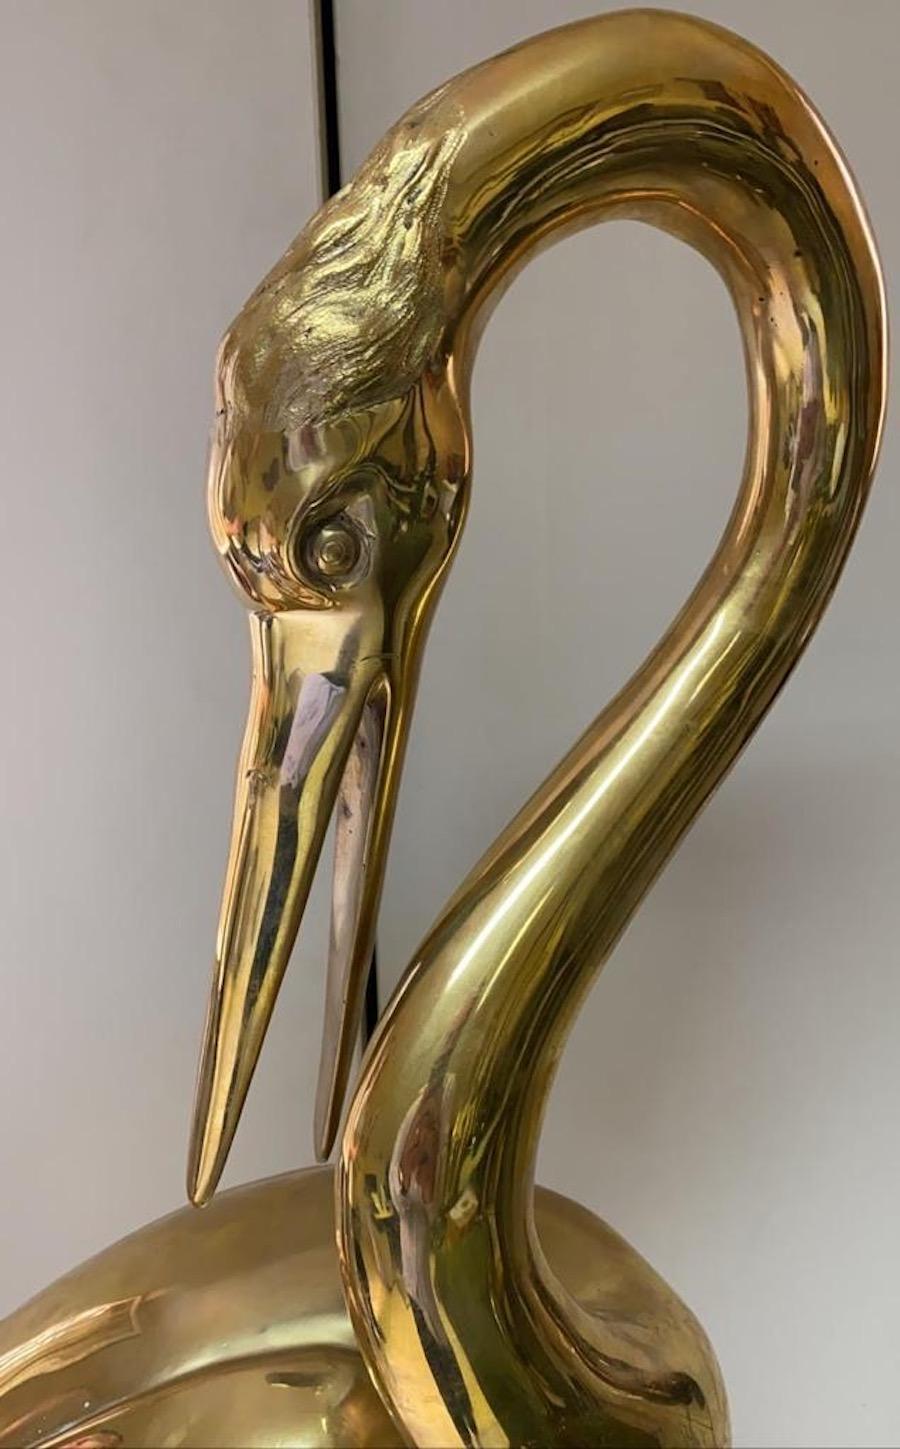 Élégante paire de sculptures de hérons en bronze doré. L'article conviendra parfaitement à un environnement intérieur ou extérieur.